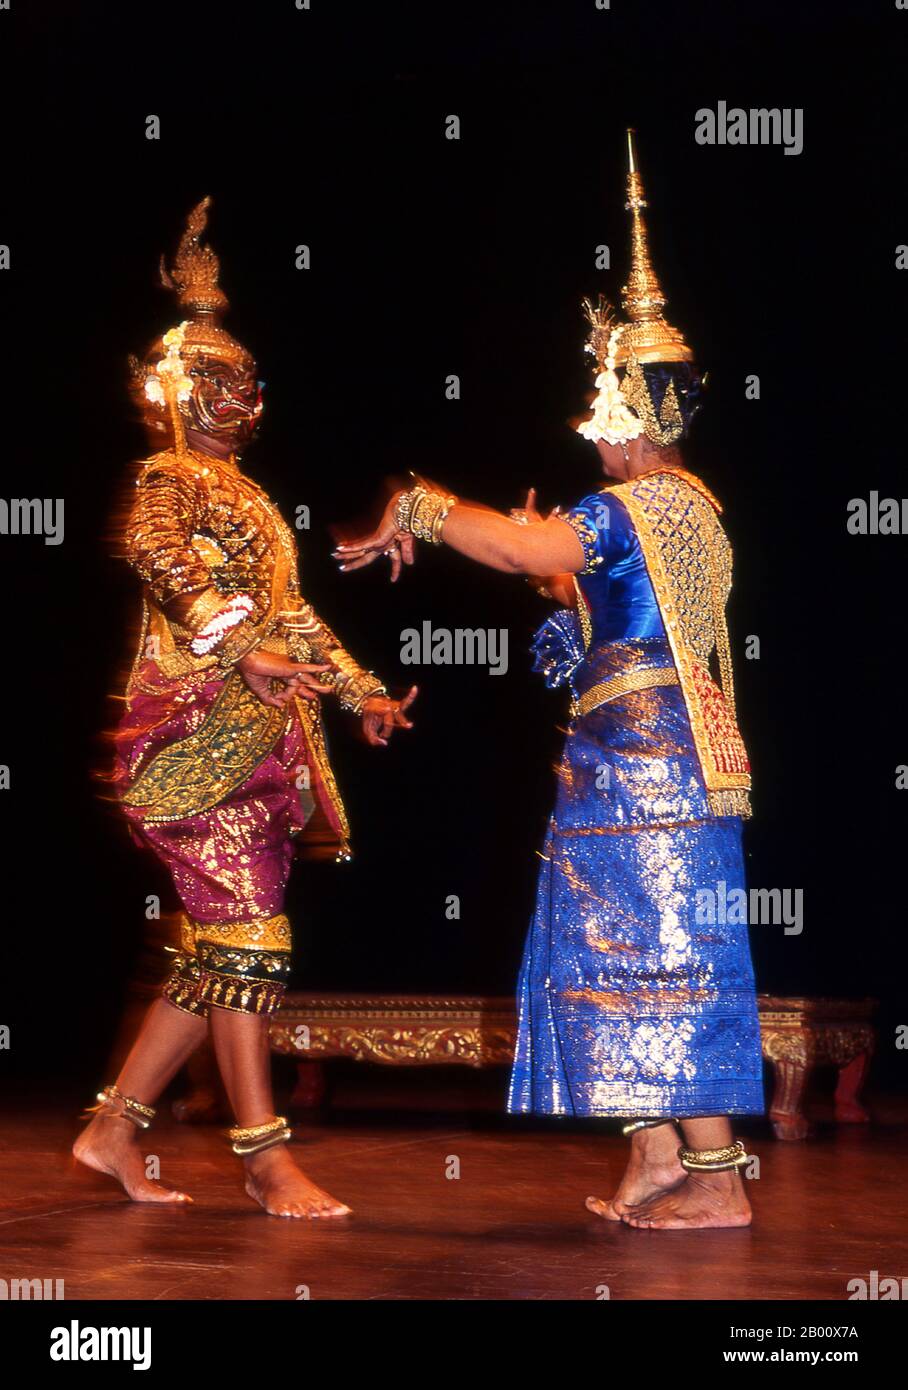 Cambogia: Ballerini, Balletto reale della Cambogia, Phnom Penh Khmer danza classica è simile alle danze classiche di Thailandia e Cambogia. Il Reamker è una versione Khmer del Ramayana ed è uno dei drammi di danza più comunemente eseguiti. Foto Stock